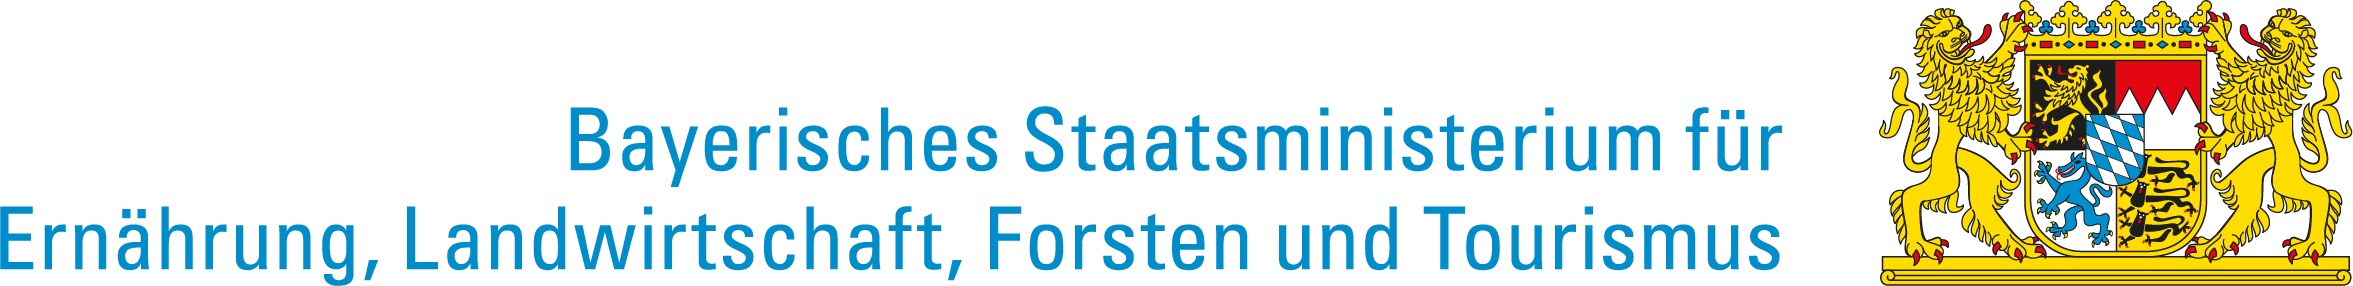 Logo des bayrischen Staatsministerium für Ernährung, Landwirtschaft und Forsten.